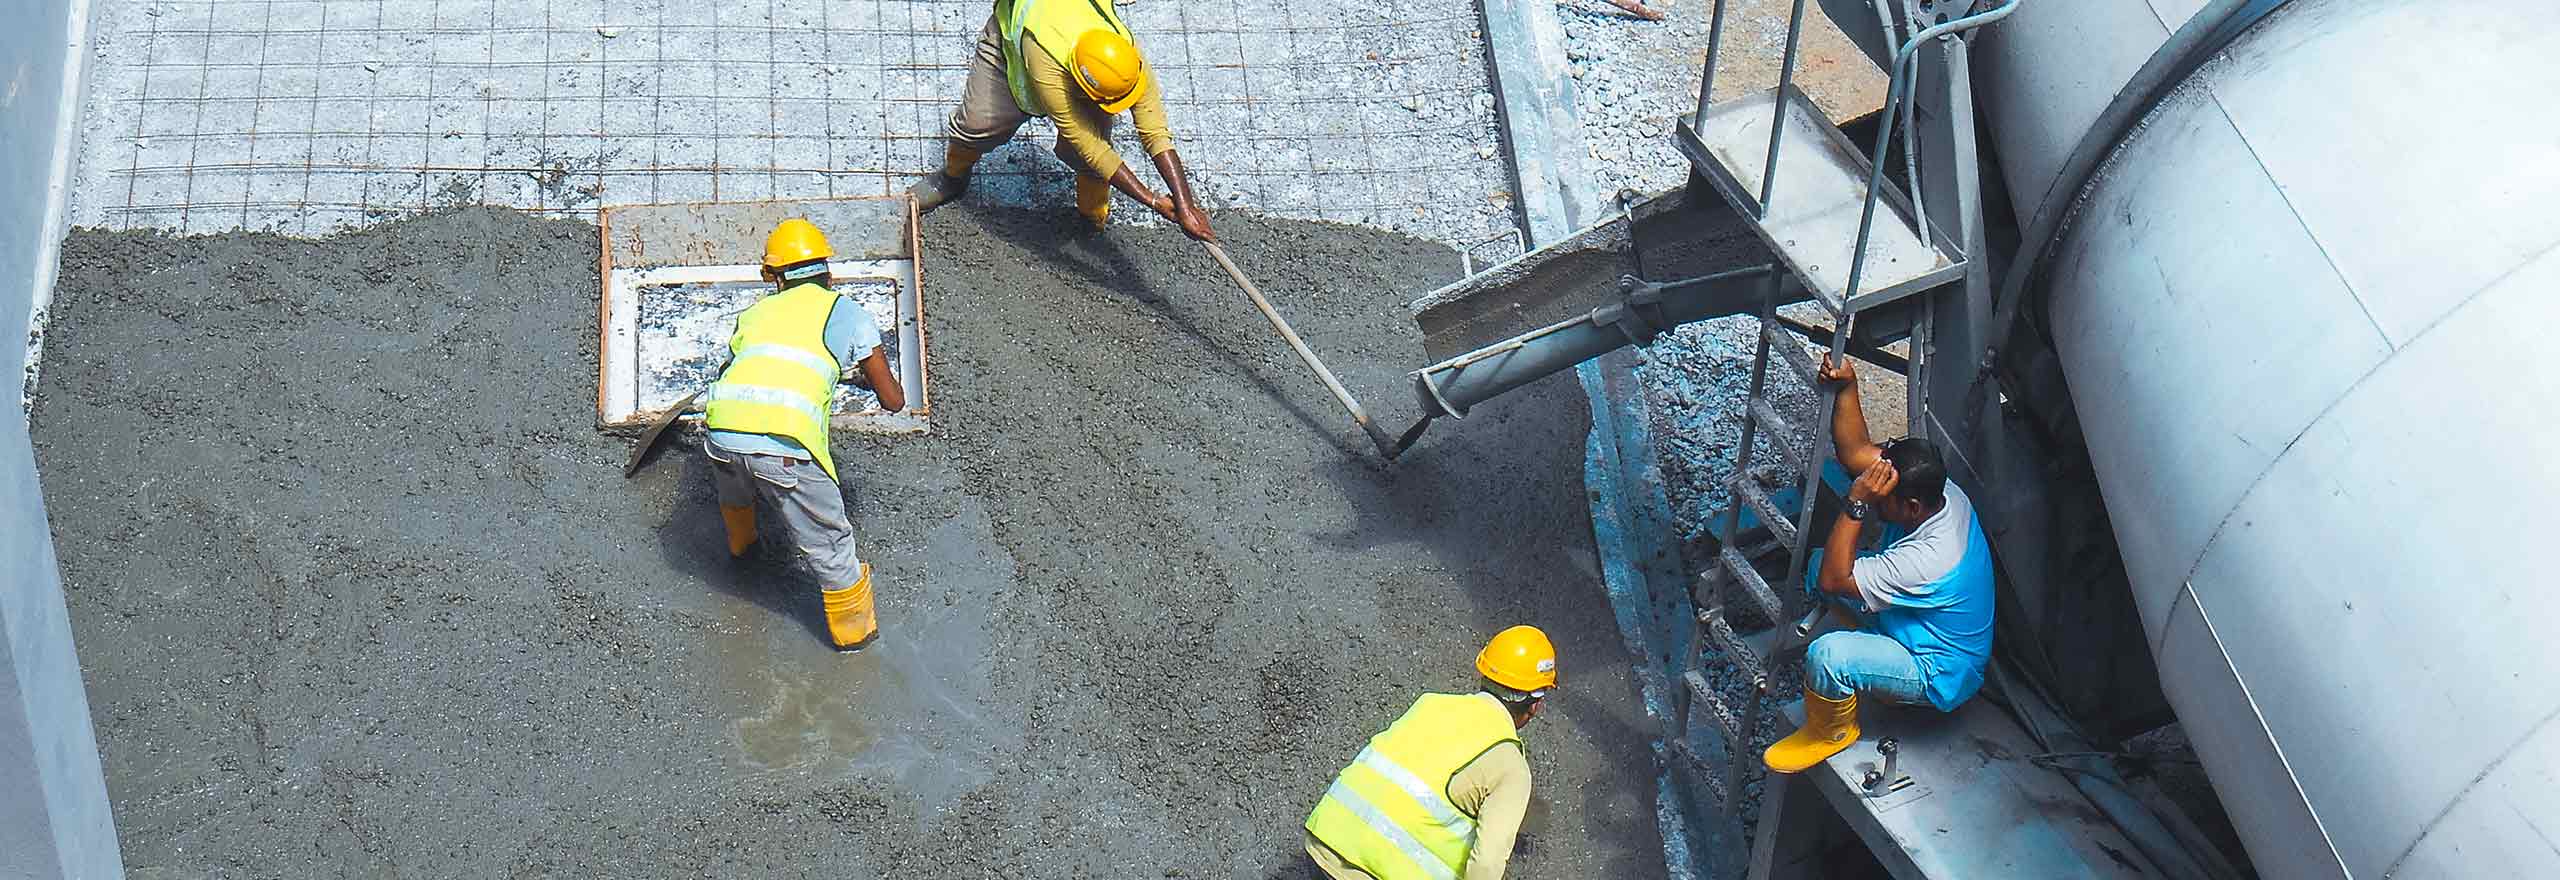 Trabajadores de la construcción que utilizan diversos equipos para verter y alisar una sección de losa de hormigón.